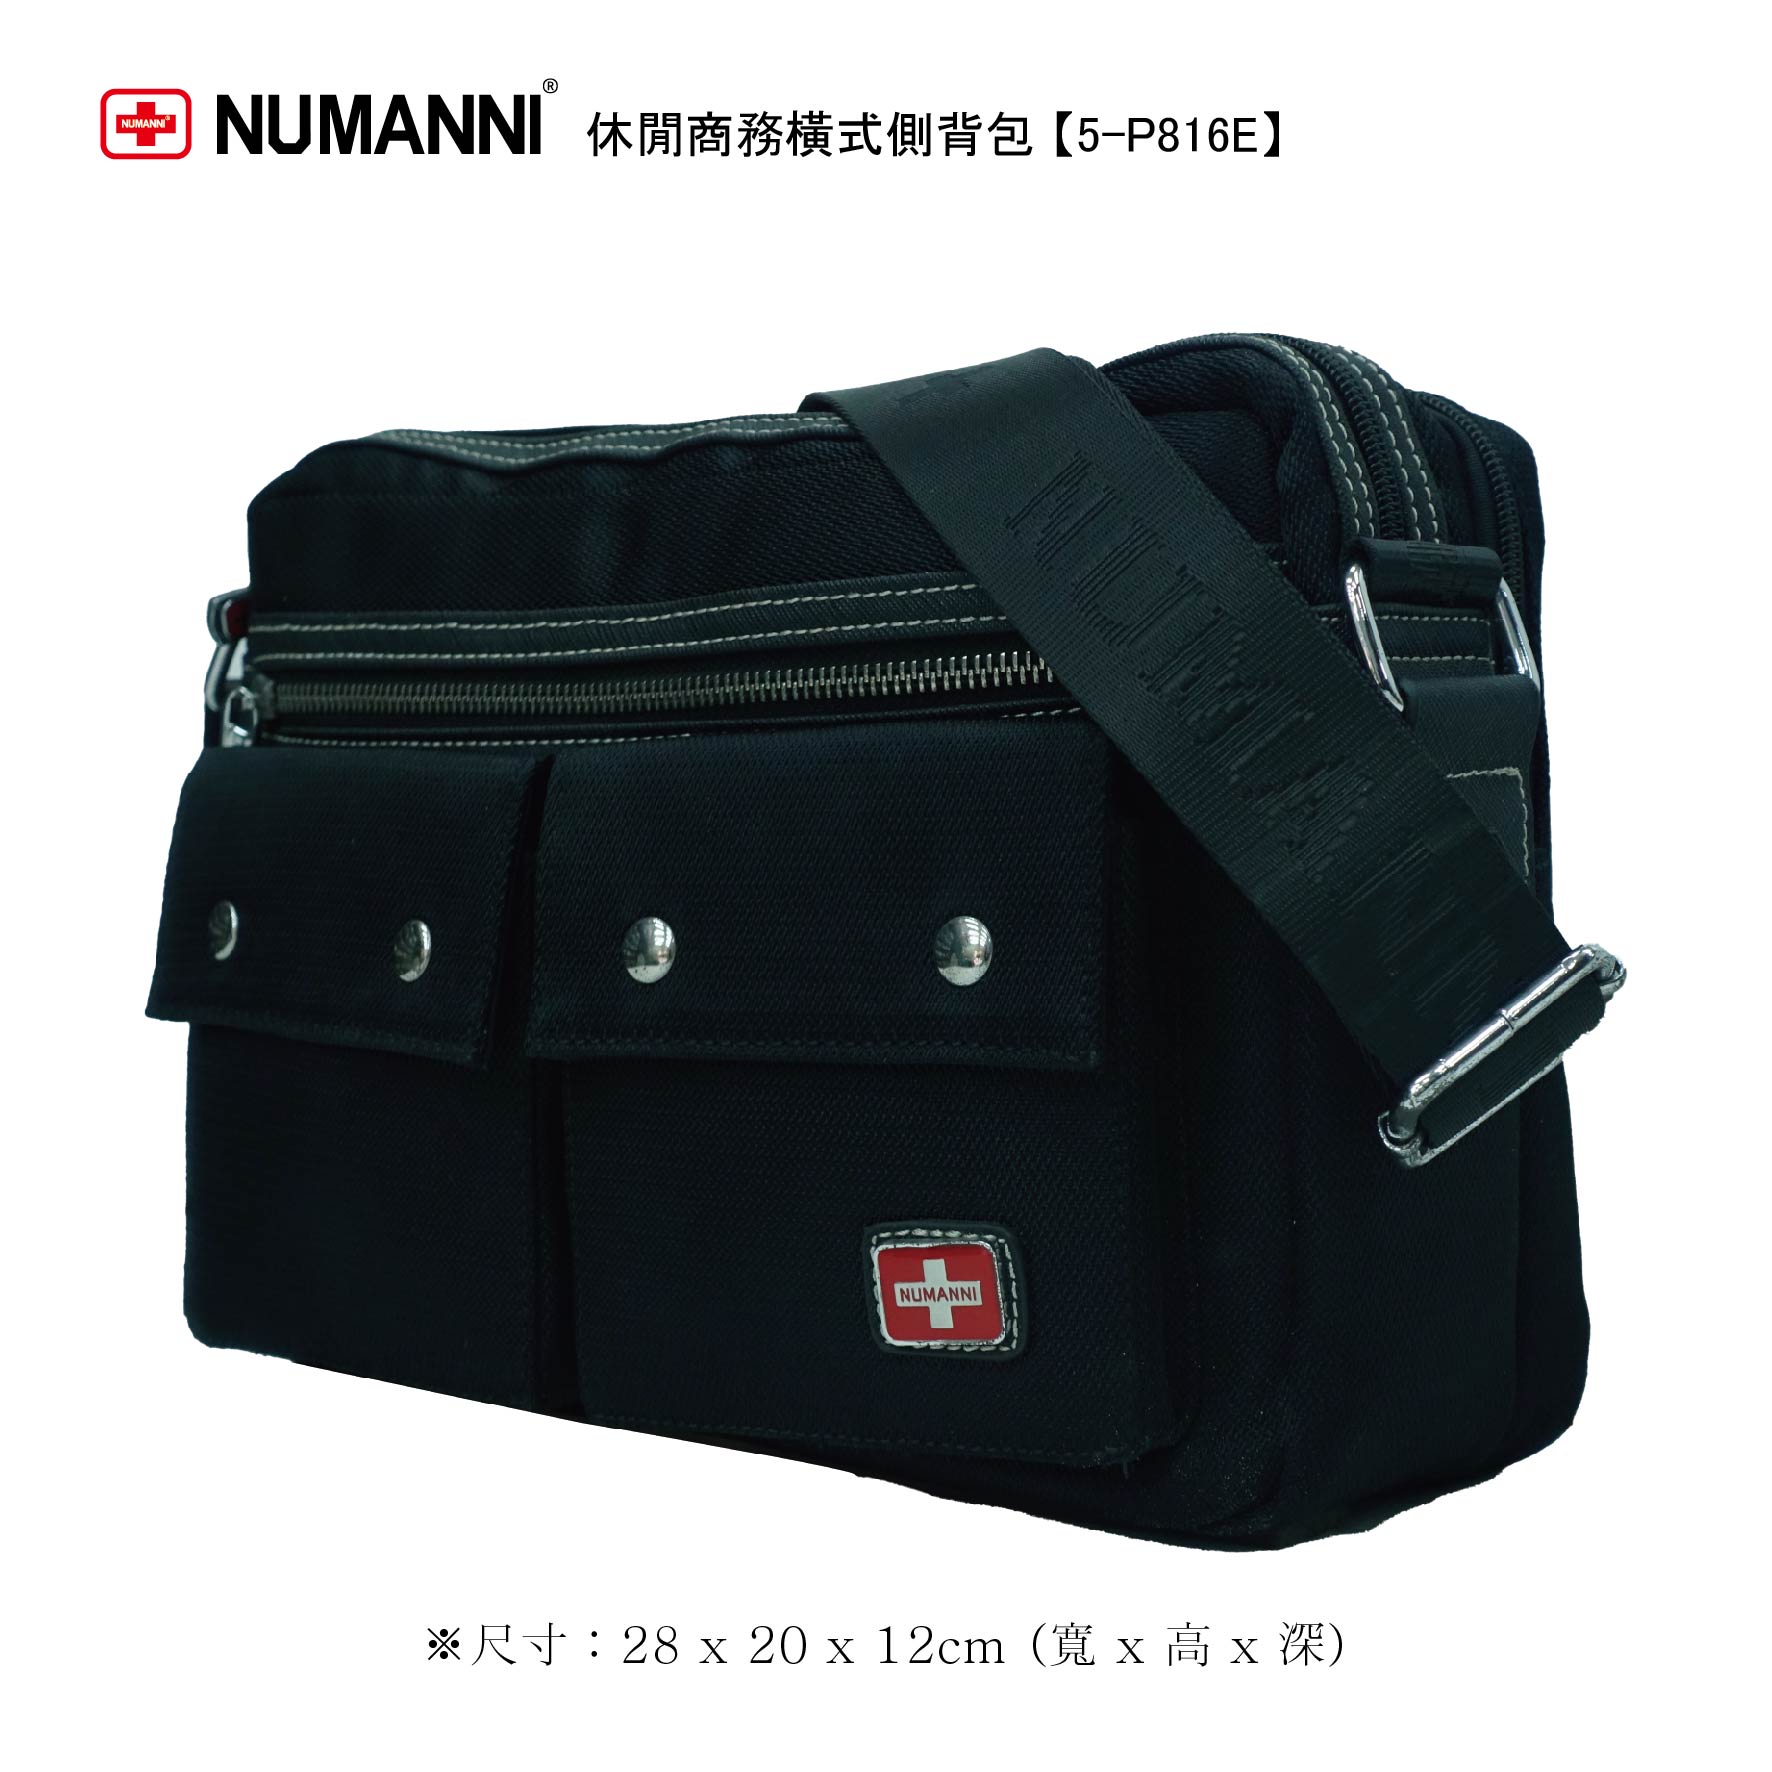 5-P816E【 NUMANNI 奴曼尼】休閒商務橫式側背包